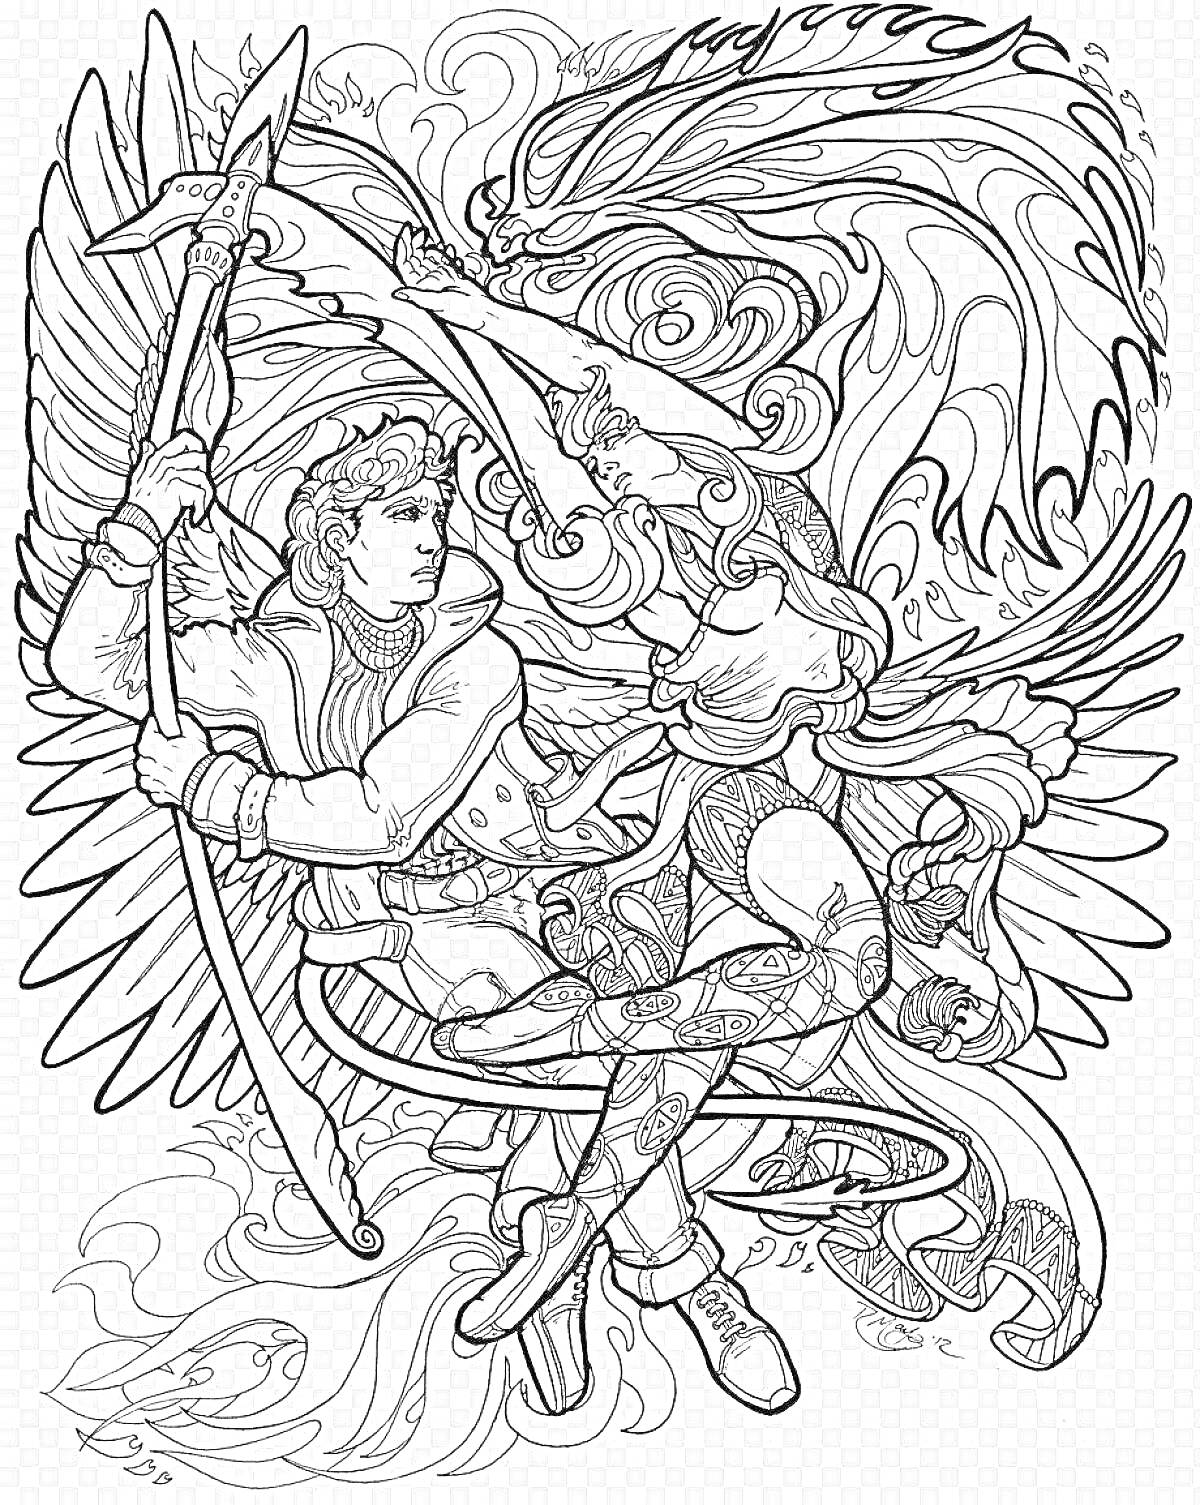 Раскраска Воин с крыльями и женщина с мечом сражаются с драконом